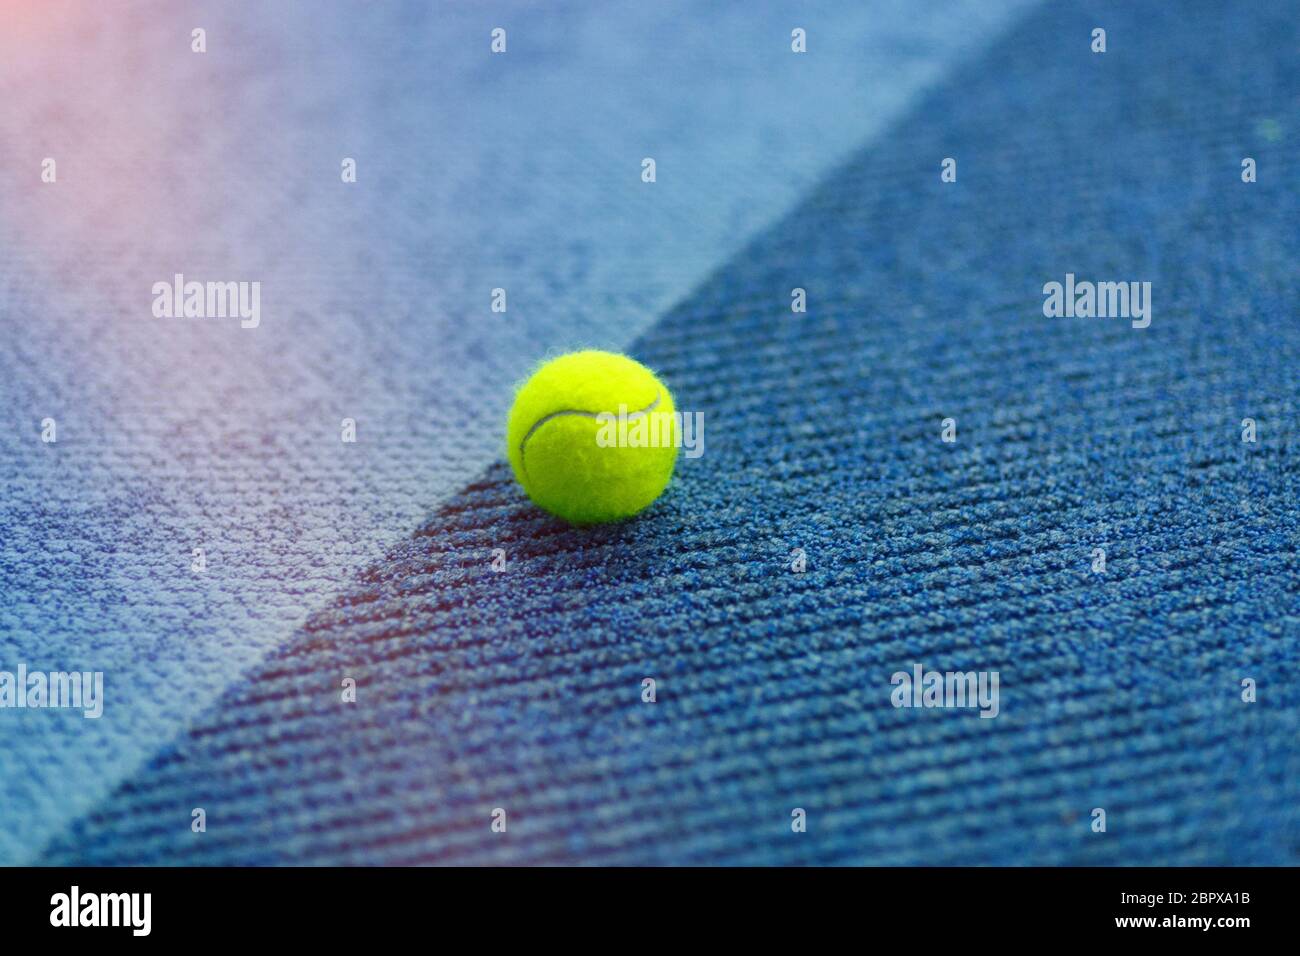 Ballon de tennis jaune sur moquette d'intérieur bleu vif Photo Stock - Alamy